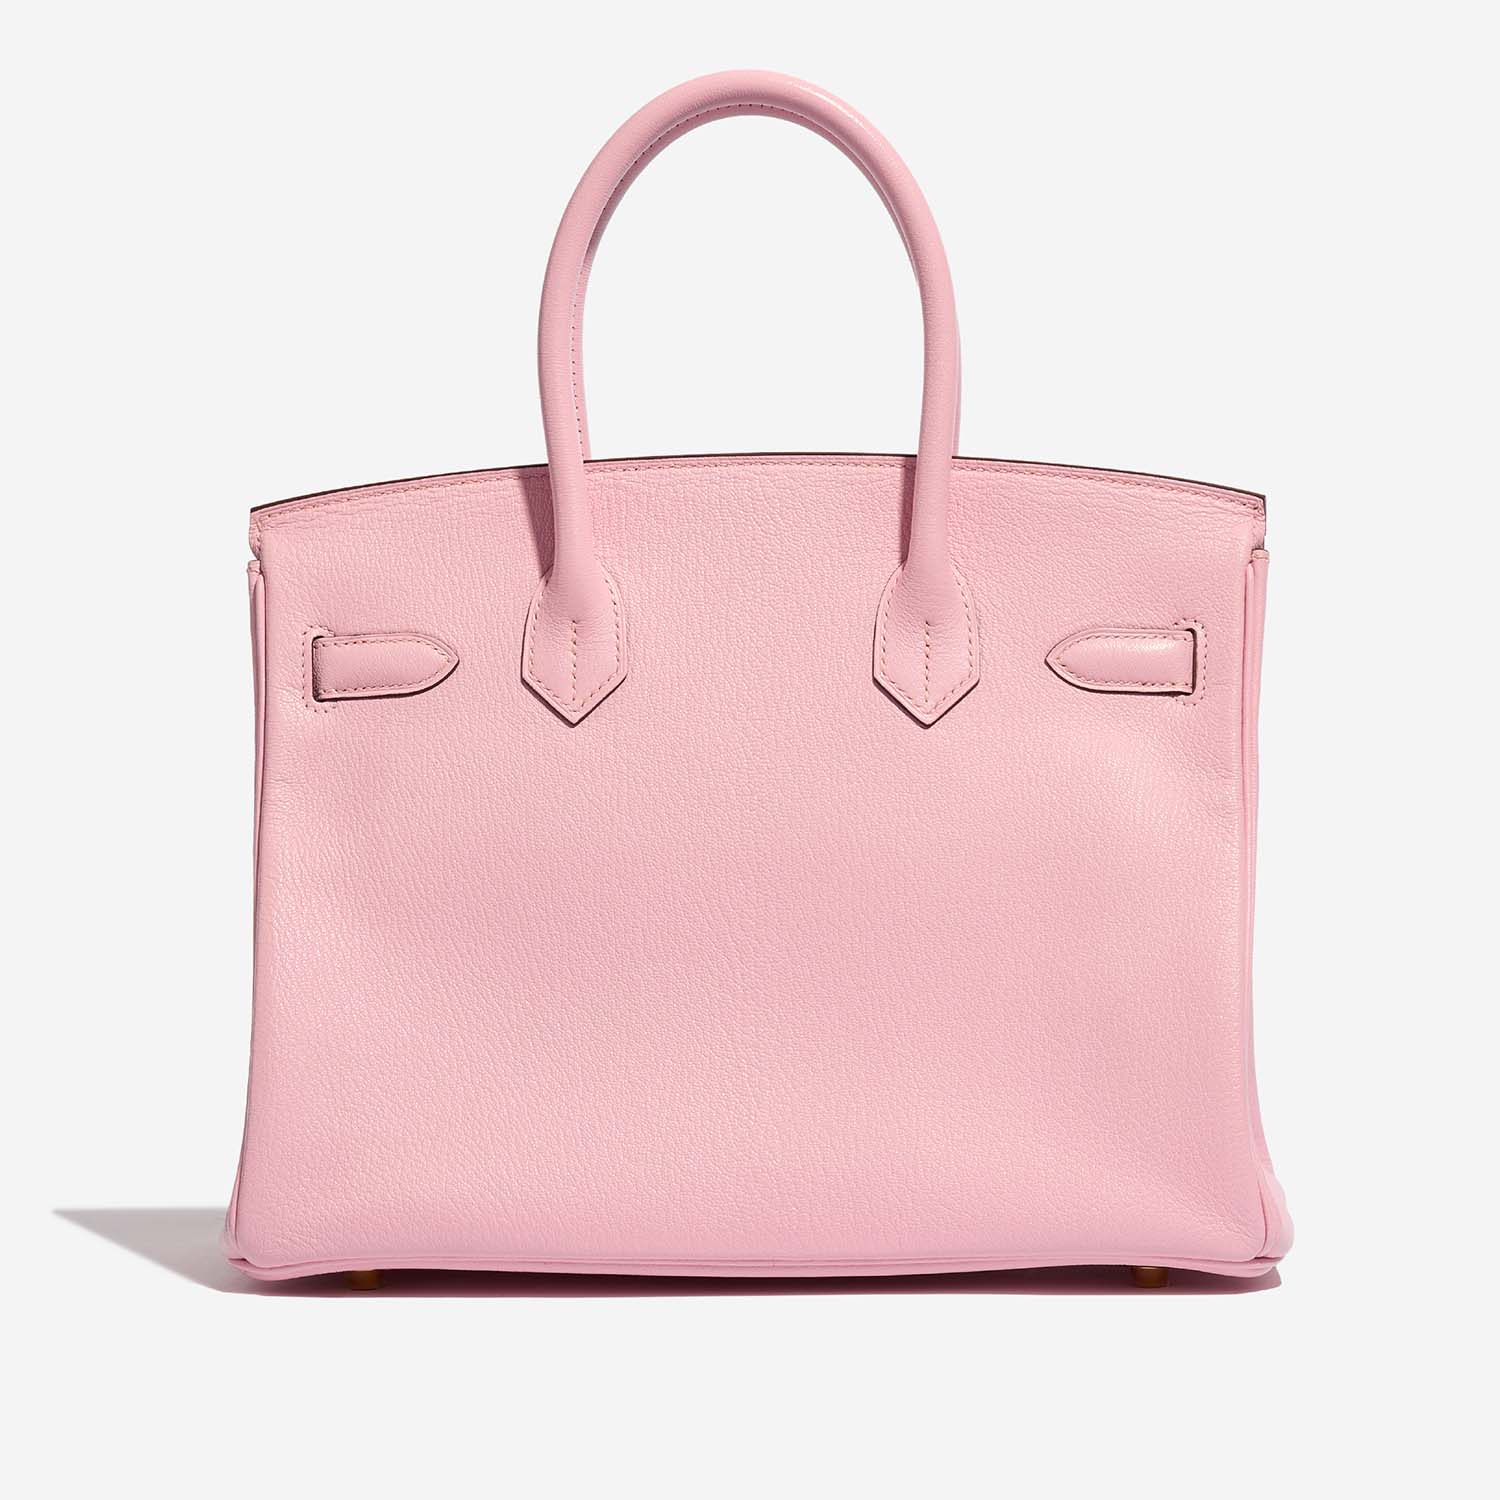 Hermès Birkin 30 roseSakura Back | Verkaufen Sie Ihre Designertasche auf Saclab.com